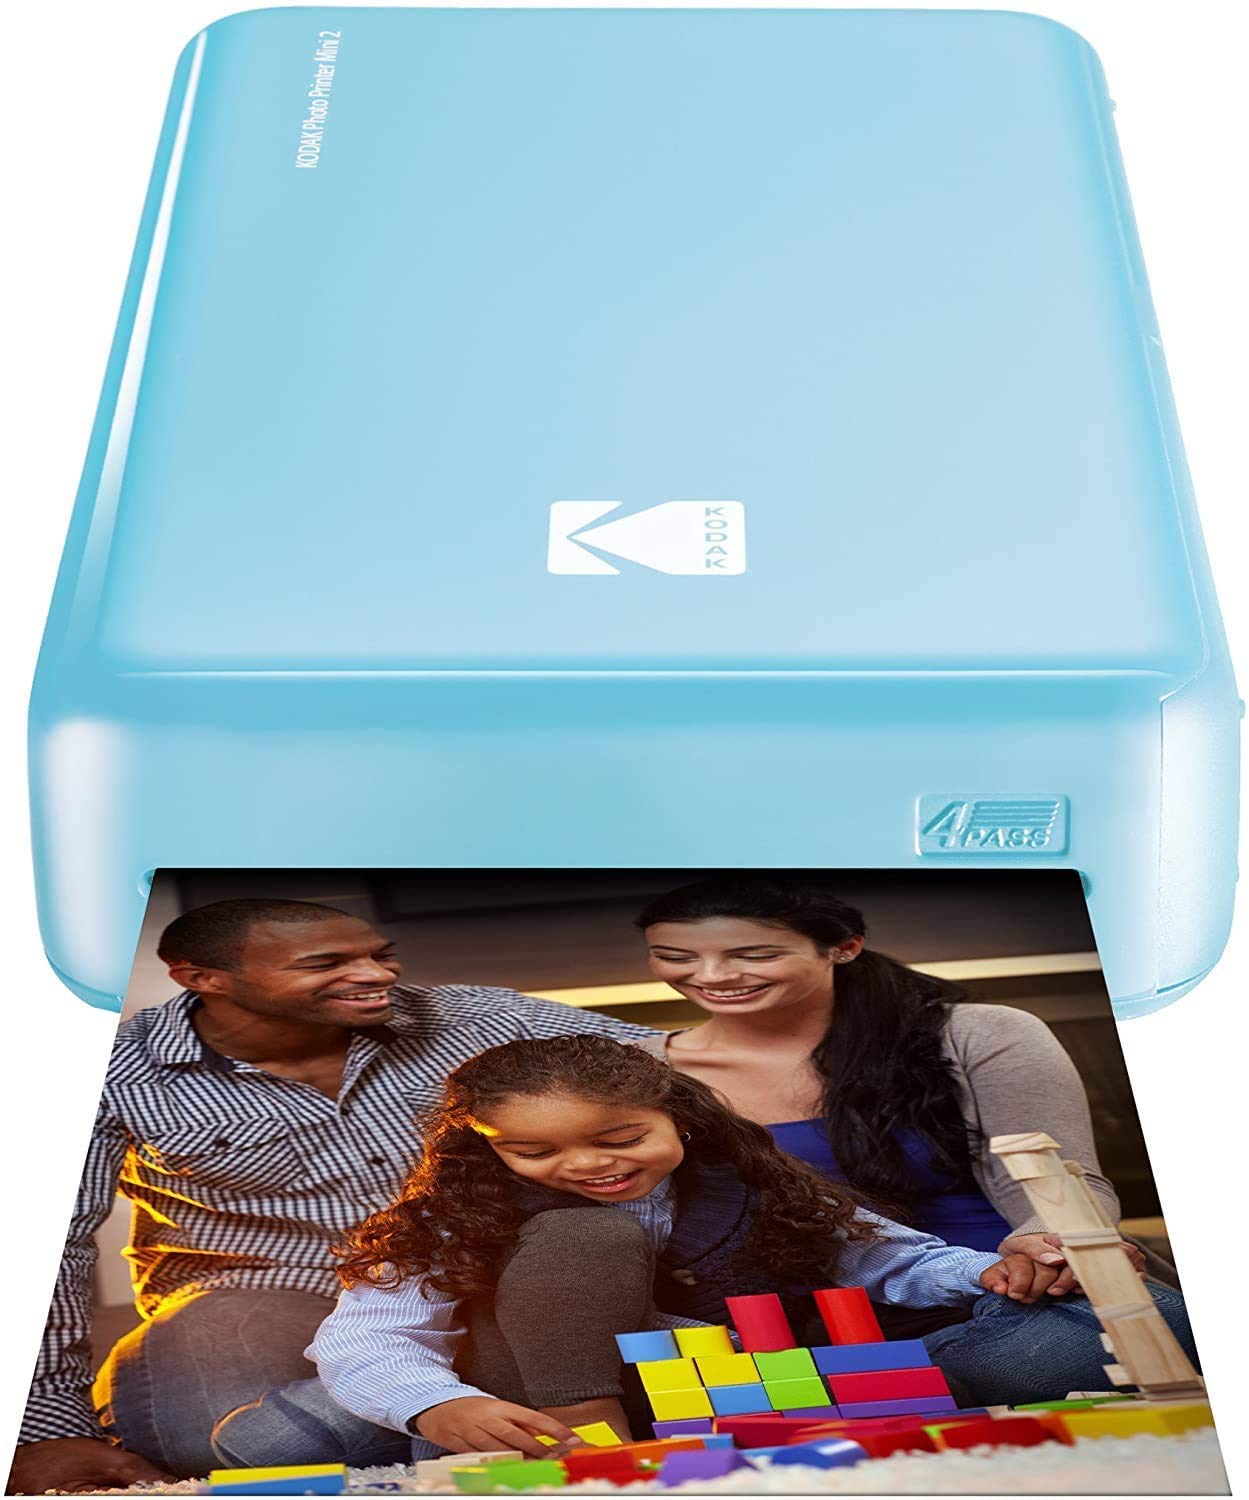 Kodak Mini 2 HD Wireless Mobile Instant Fotodrucker w / 4 Pass patentierte Drucktechnologie (Blau) - Kompatibel mit iOS & Android-Geräte - Echte Tinte in Einem Instant